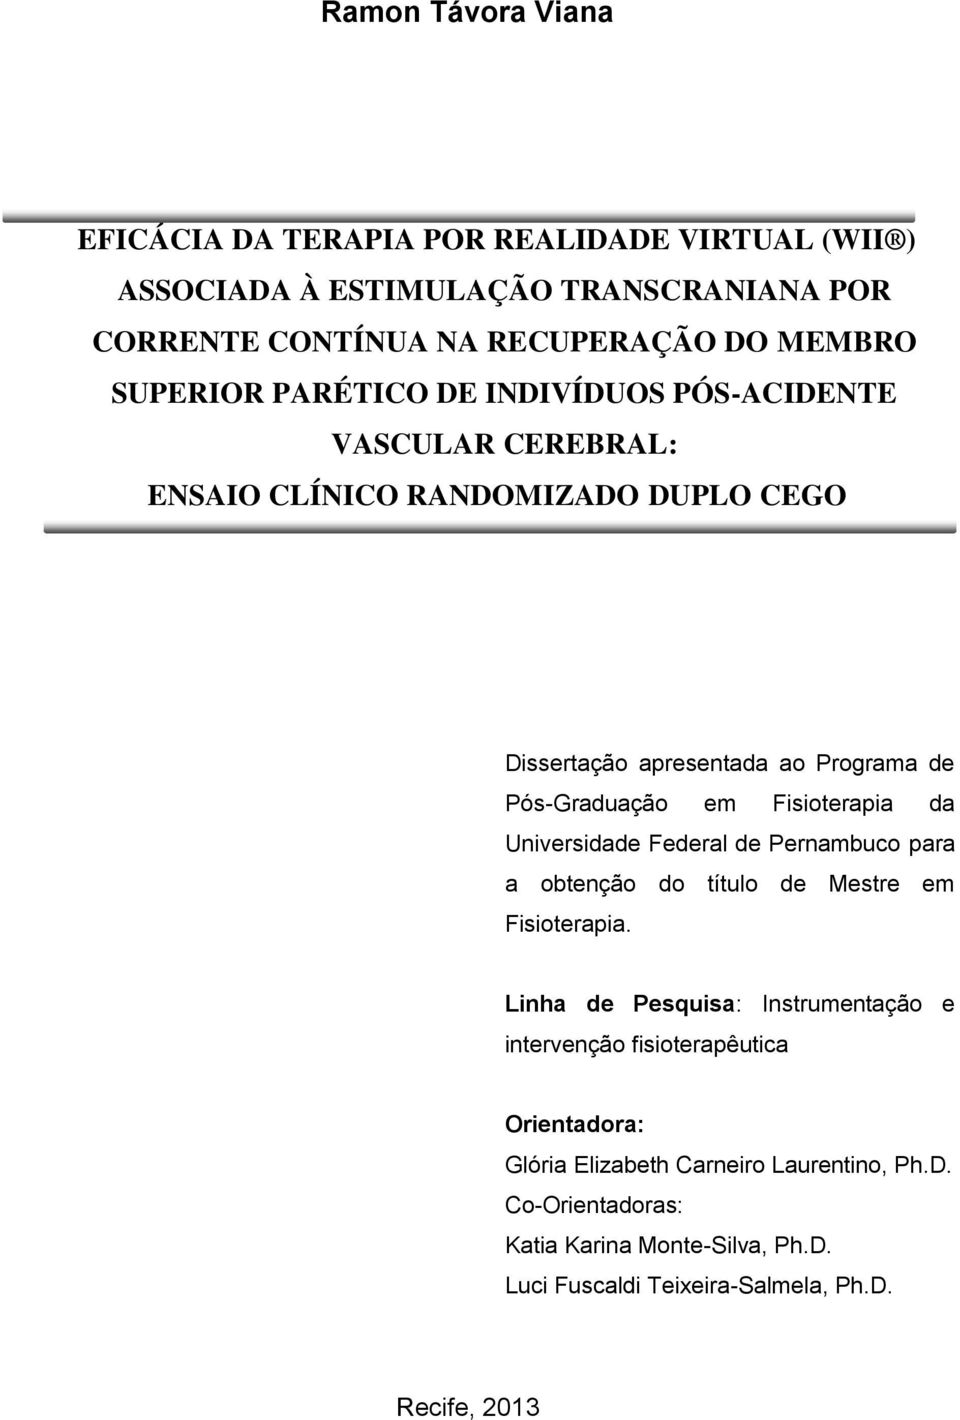 Fisioterapia da Universidade Federal de Pernambuco para a obtenção do título de Mestre em Fisioterapia.